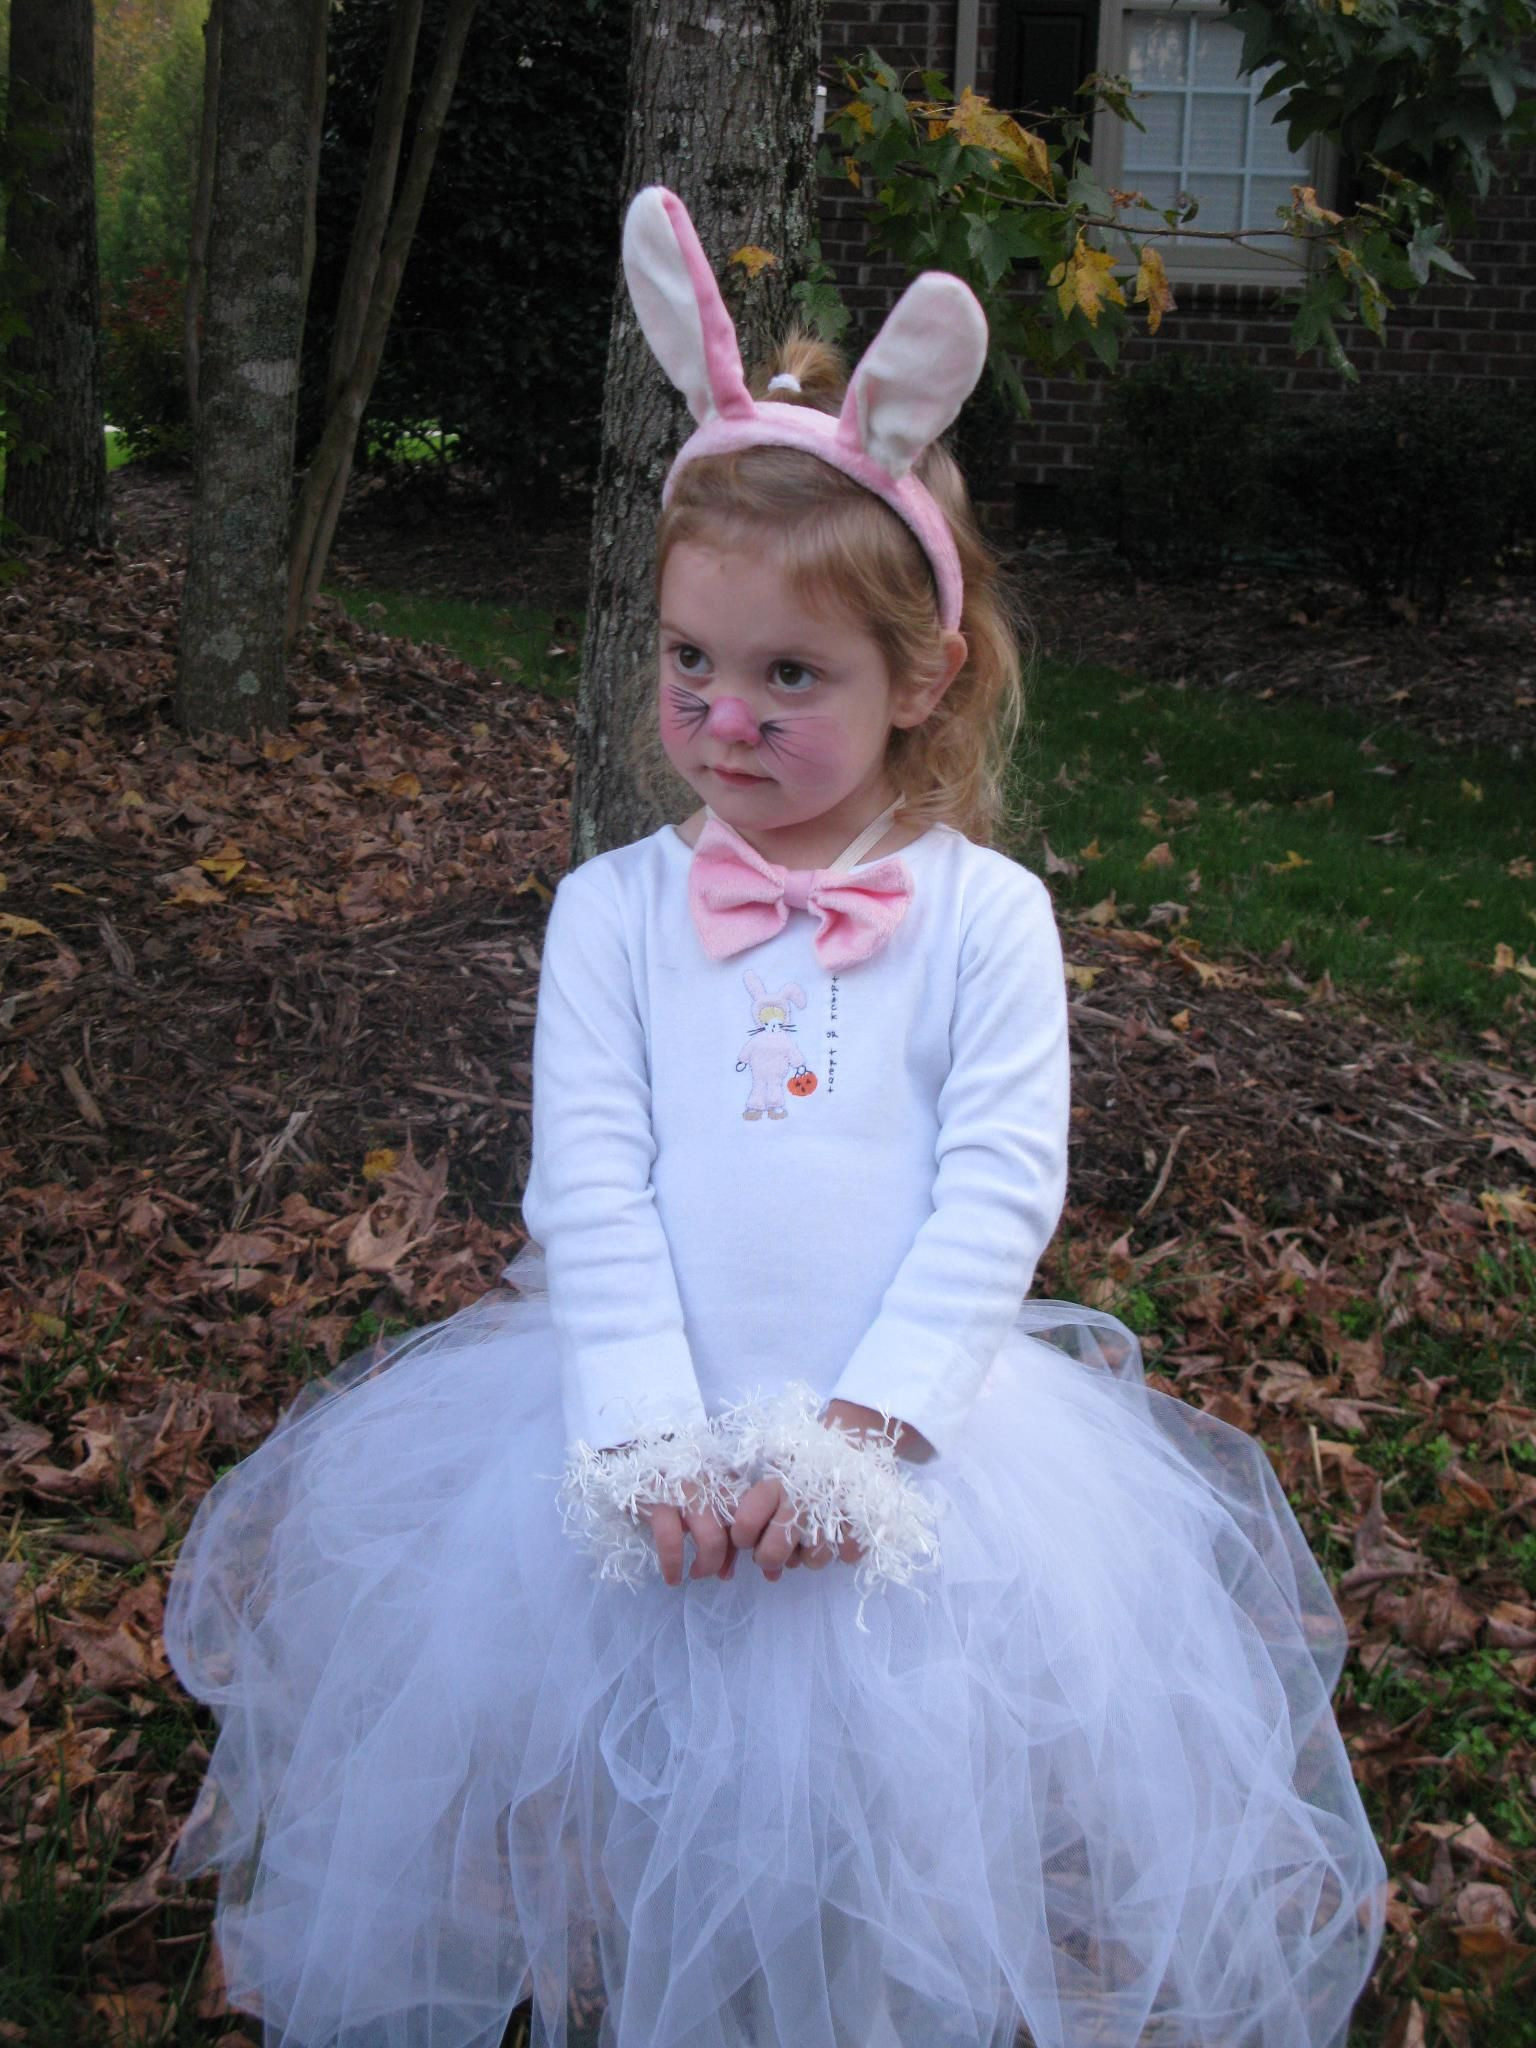 Easter Costume Ideas
 Bunny Costume idea Cute makeup